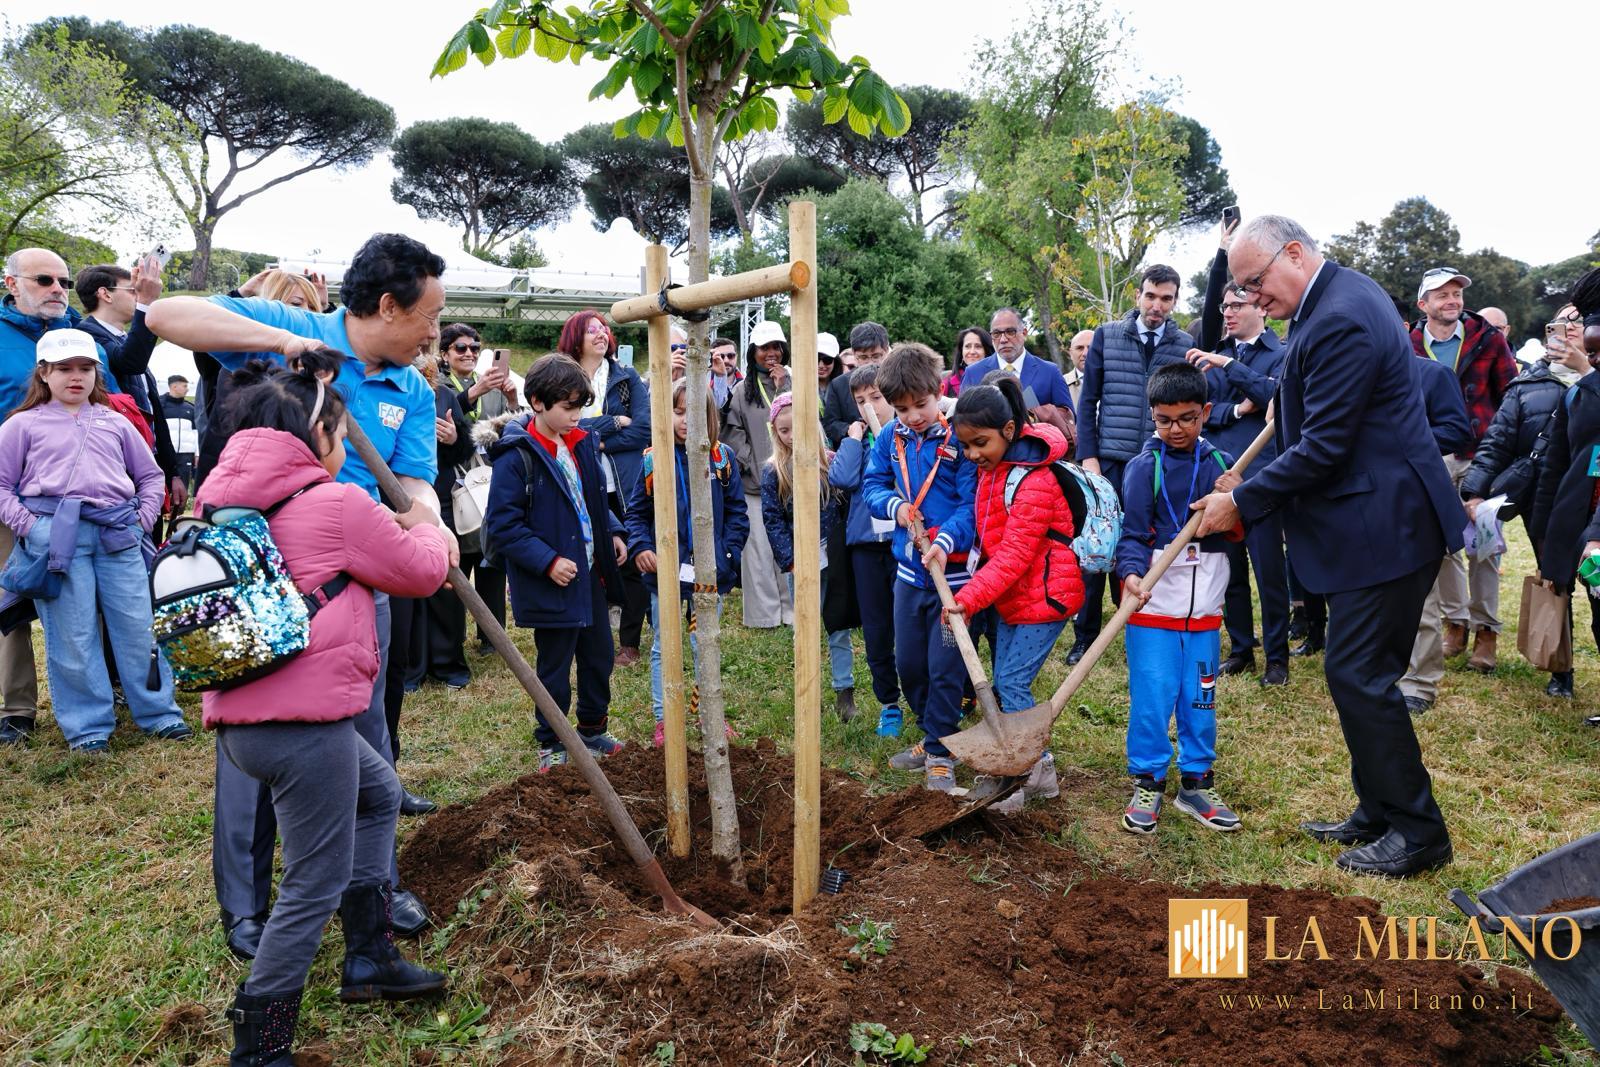 Roma. Inaugurata la messa a dimora di 80 alberature a Villa Pamphilj nell'ambito del progetto di forestazione di FAO a Roma Capitale "biblioteca mondiale degli alberi e dei fiori".